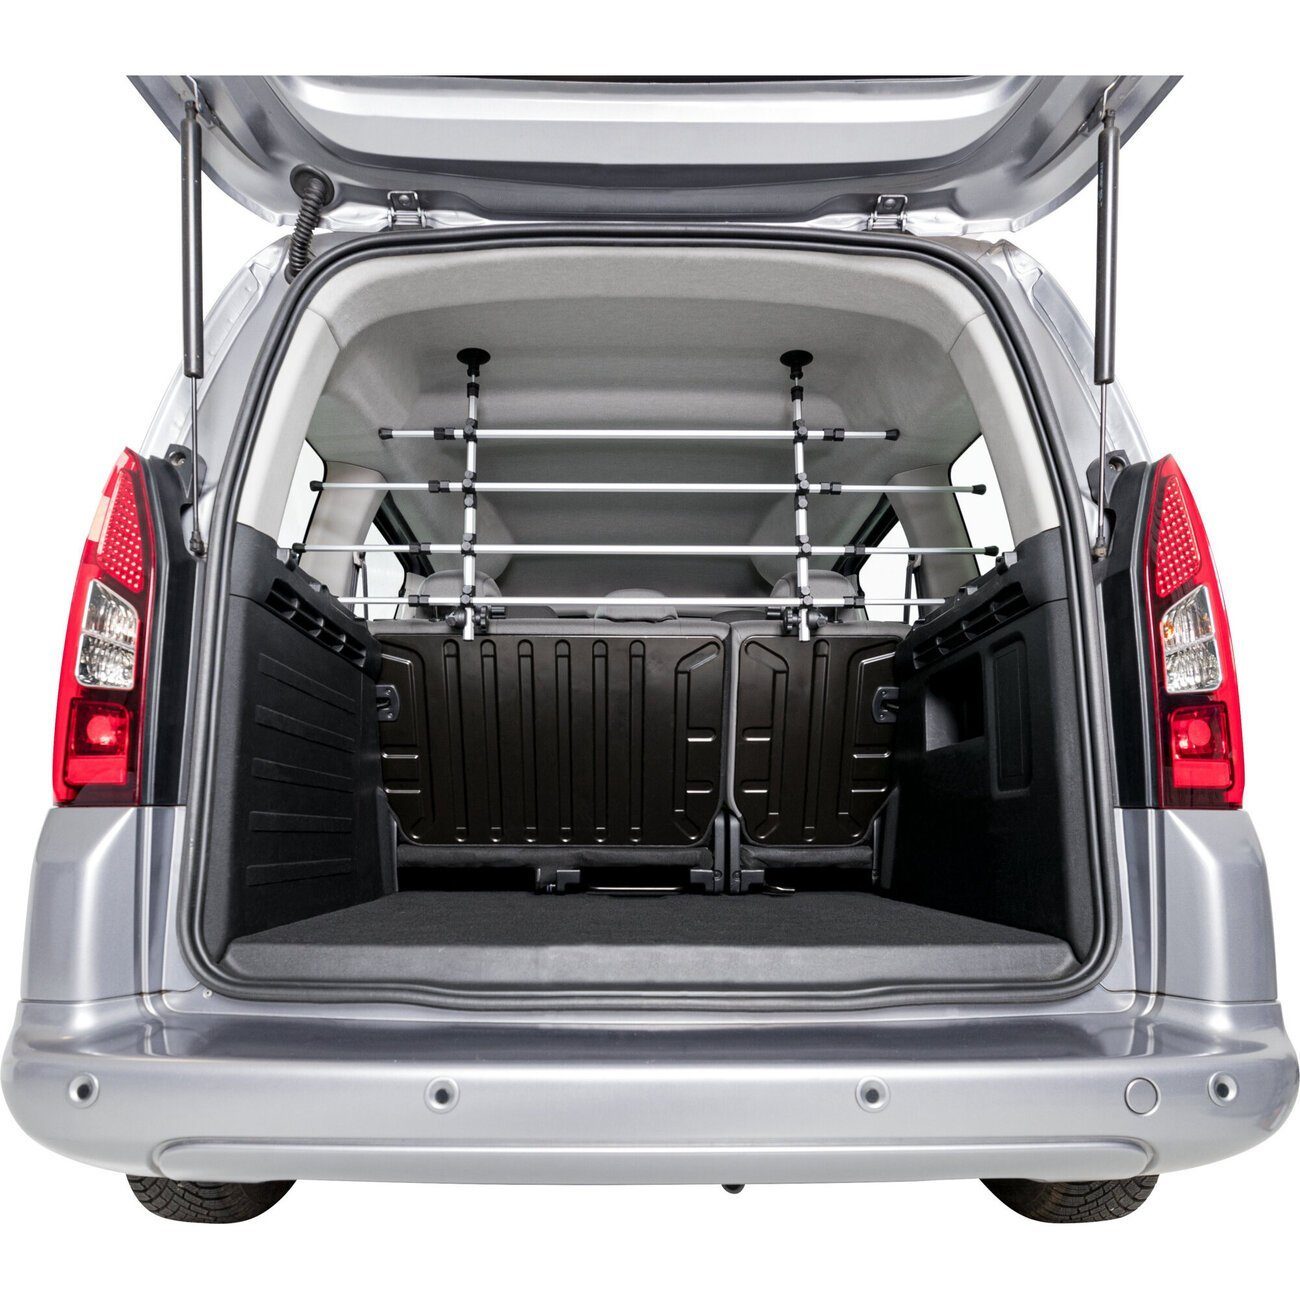 TRIXIE Hundegitter AutoGitter für Vans Caddys und Kleinbusse, platzsparende  Befestigung, Nutzung des kompletten Kofferraums möglich